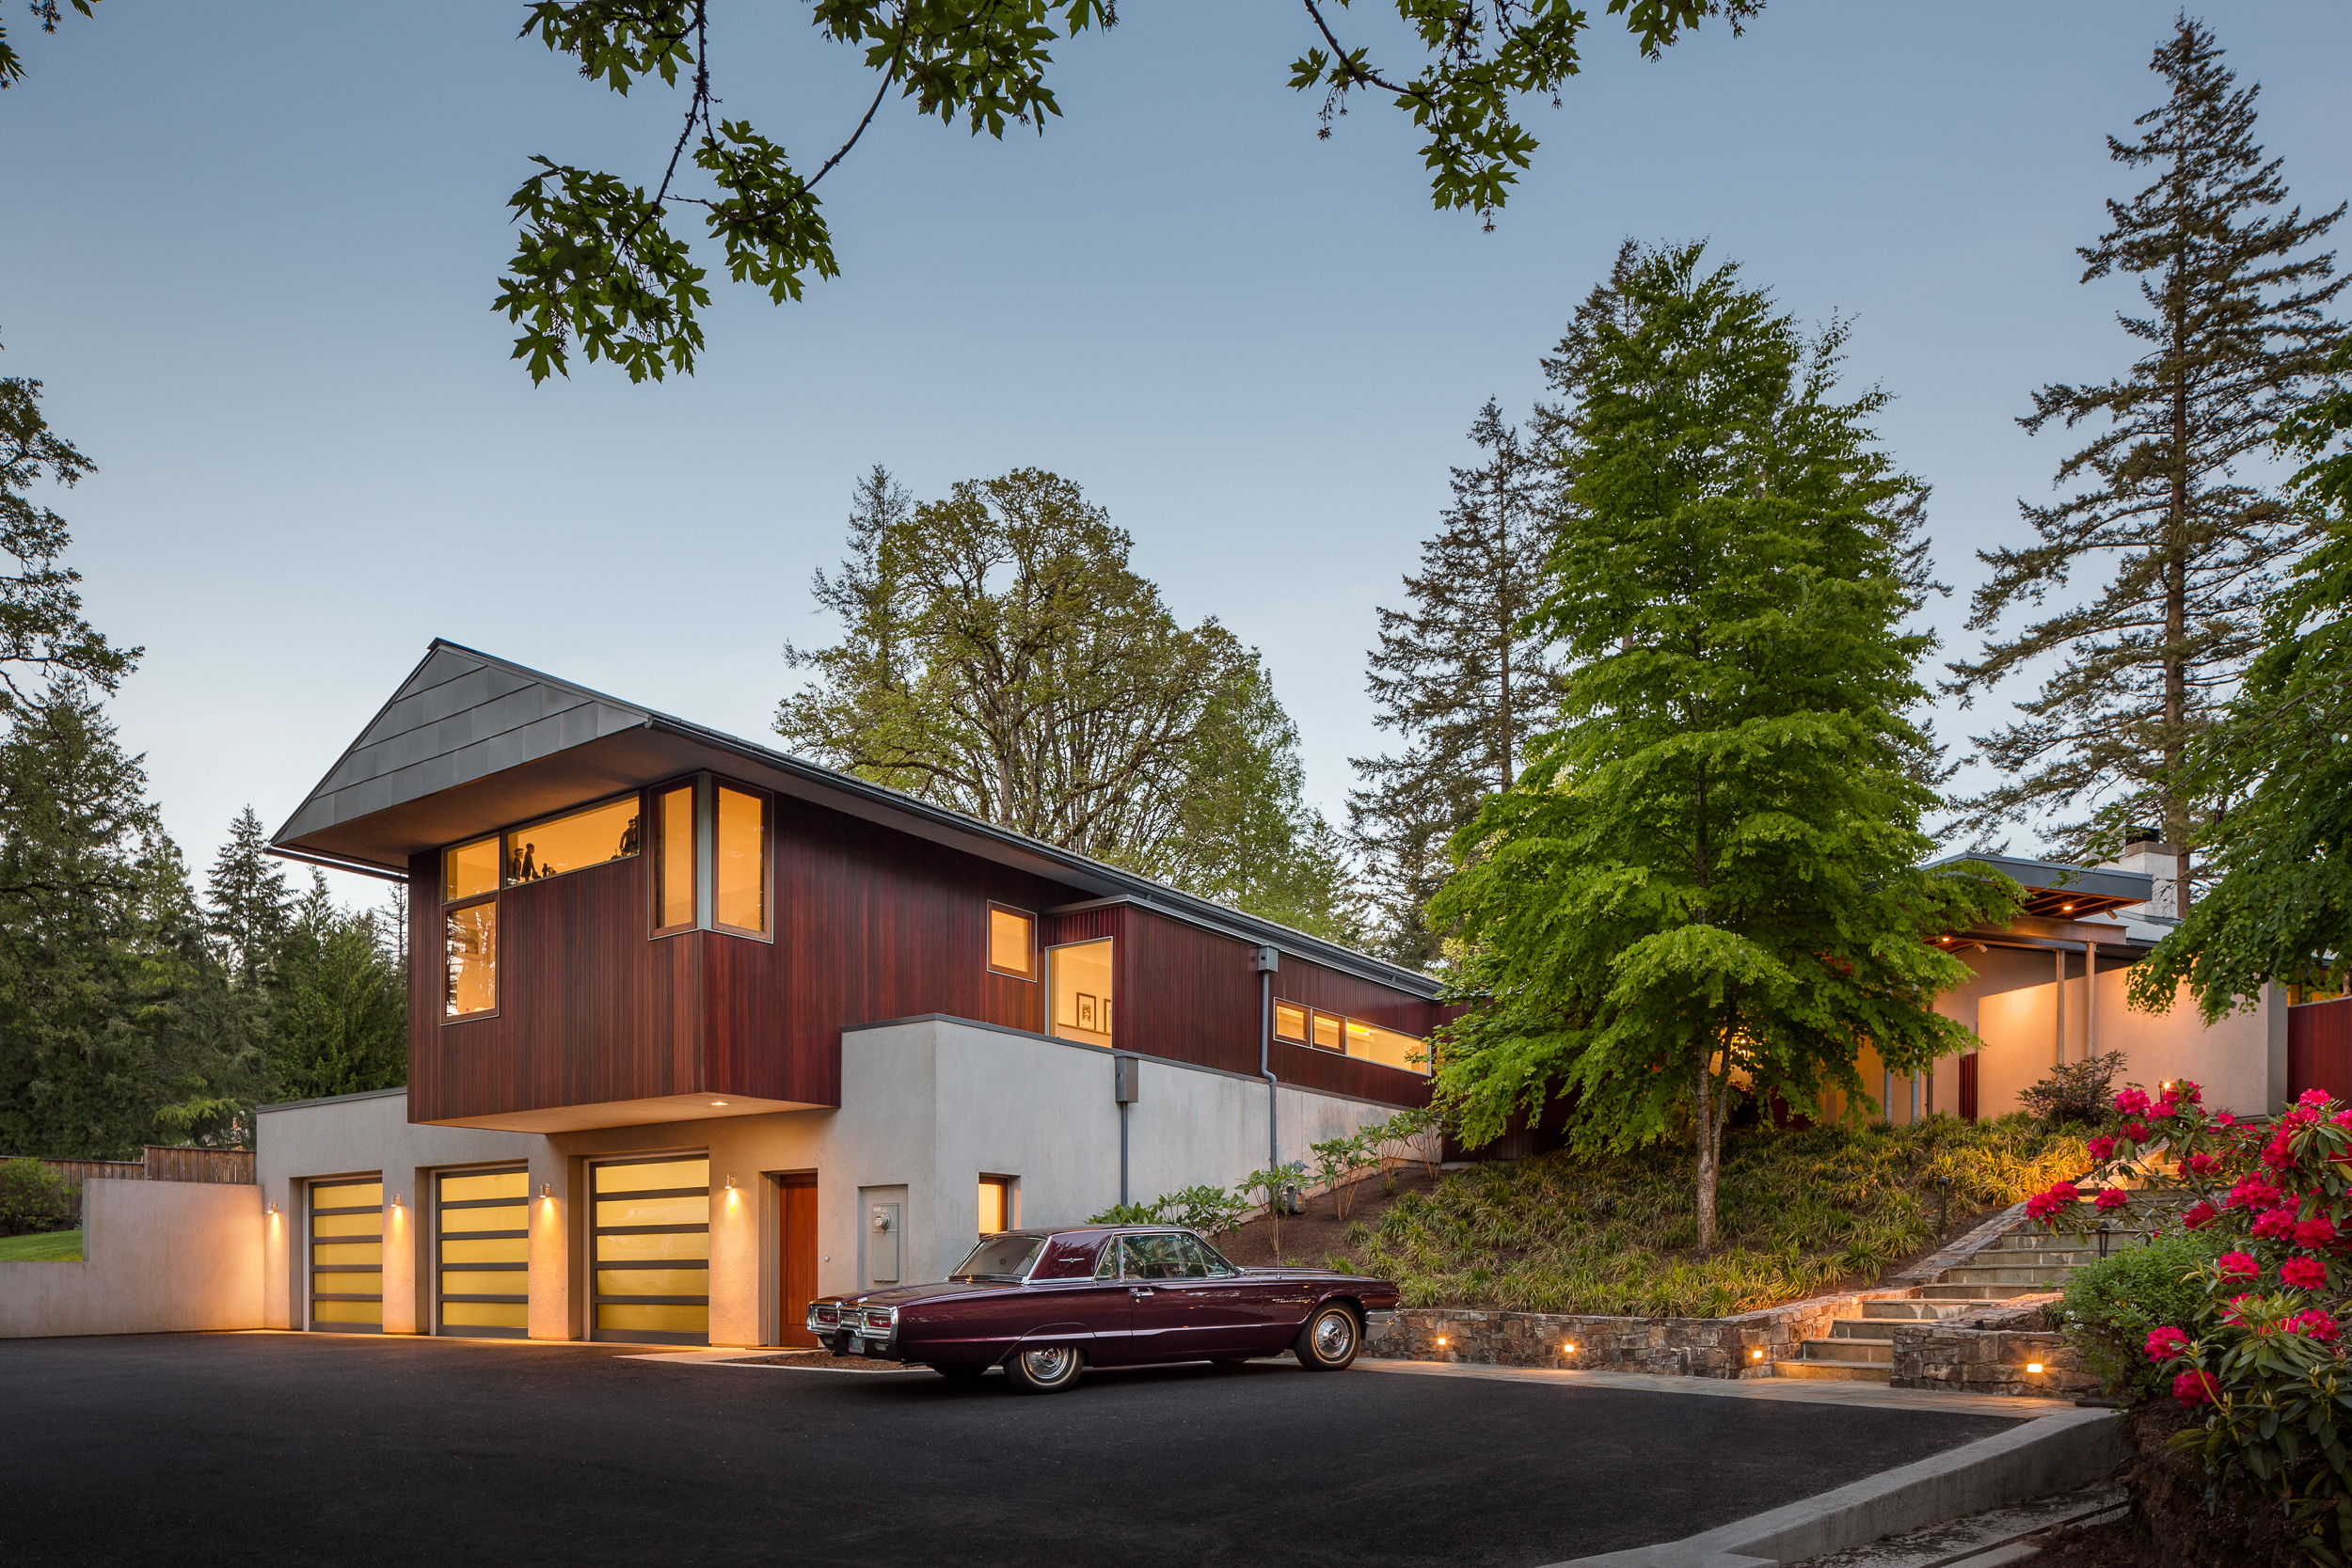  Cedar Mill House / Richard Brown Architect, AIA 